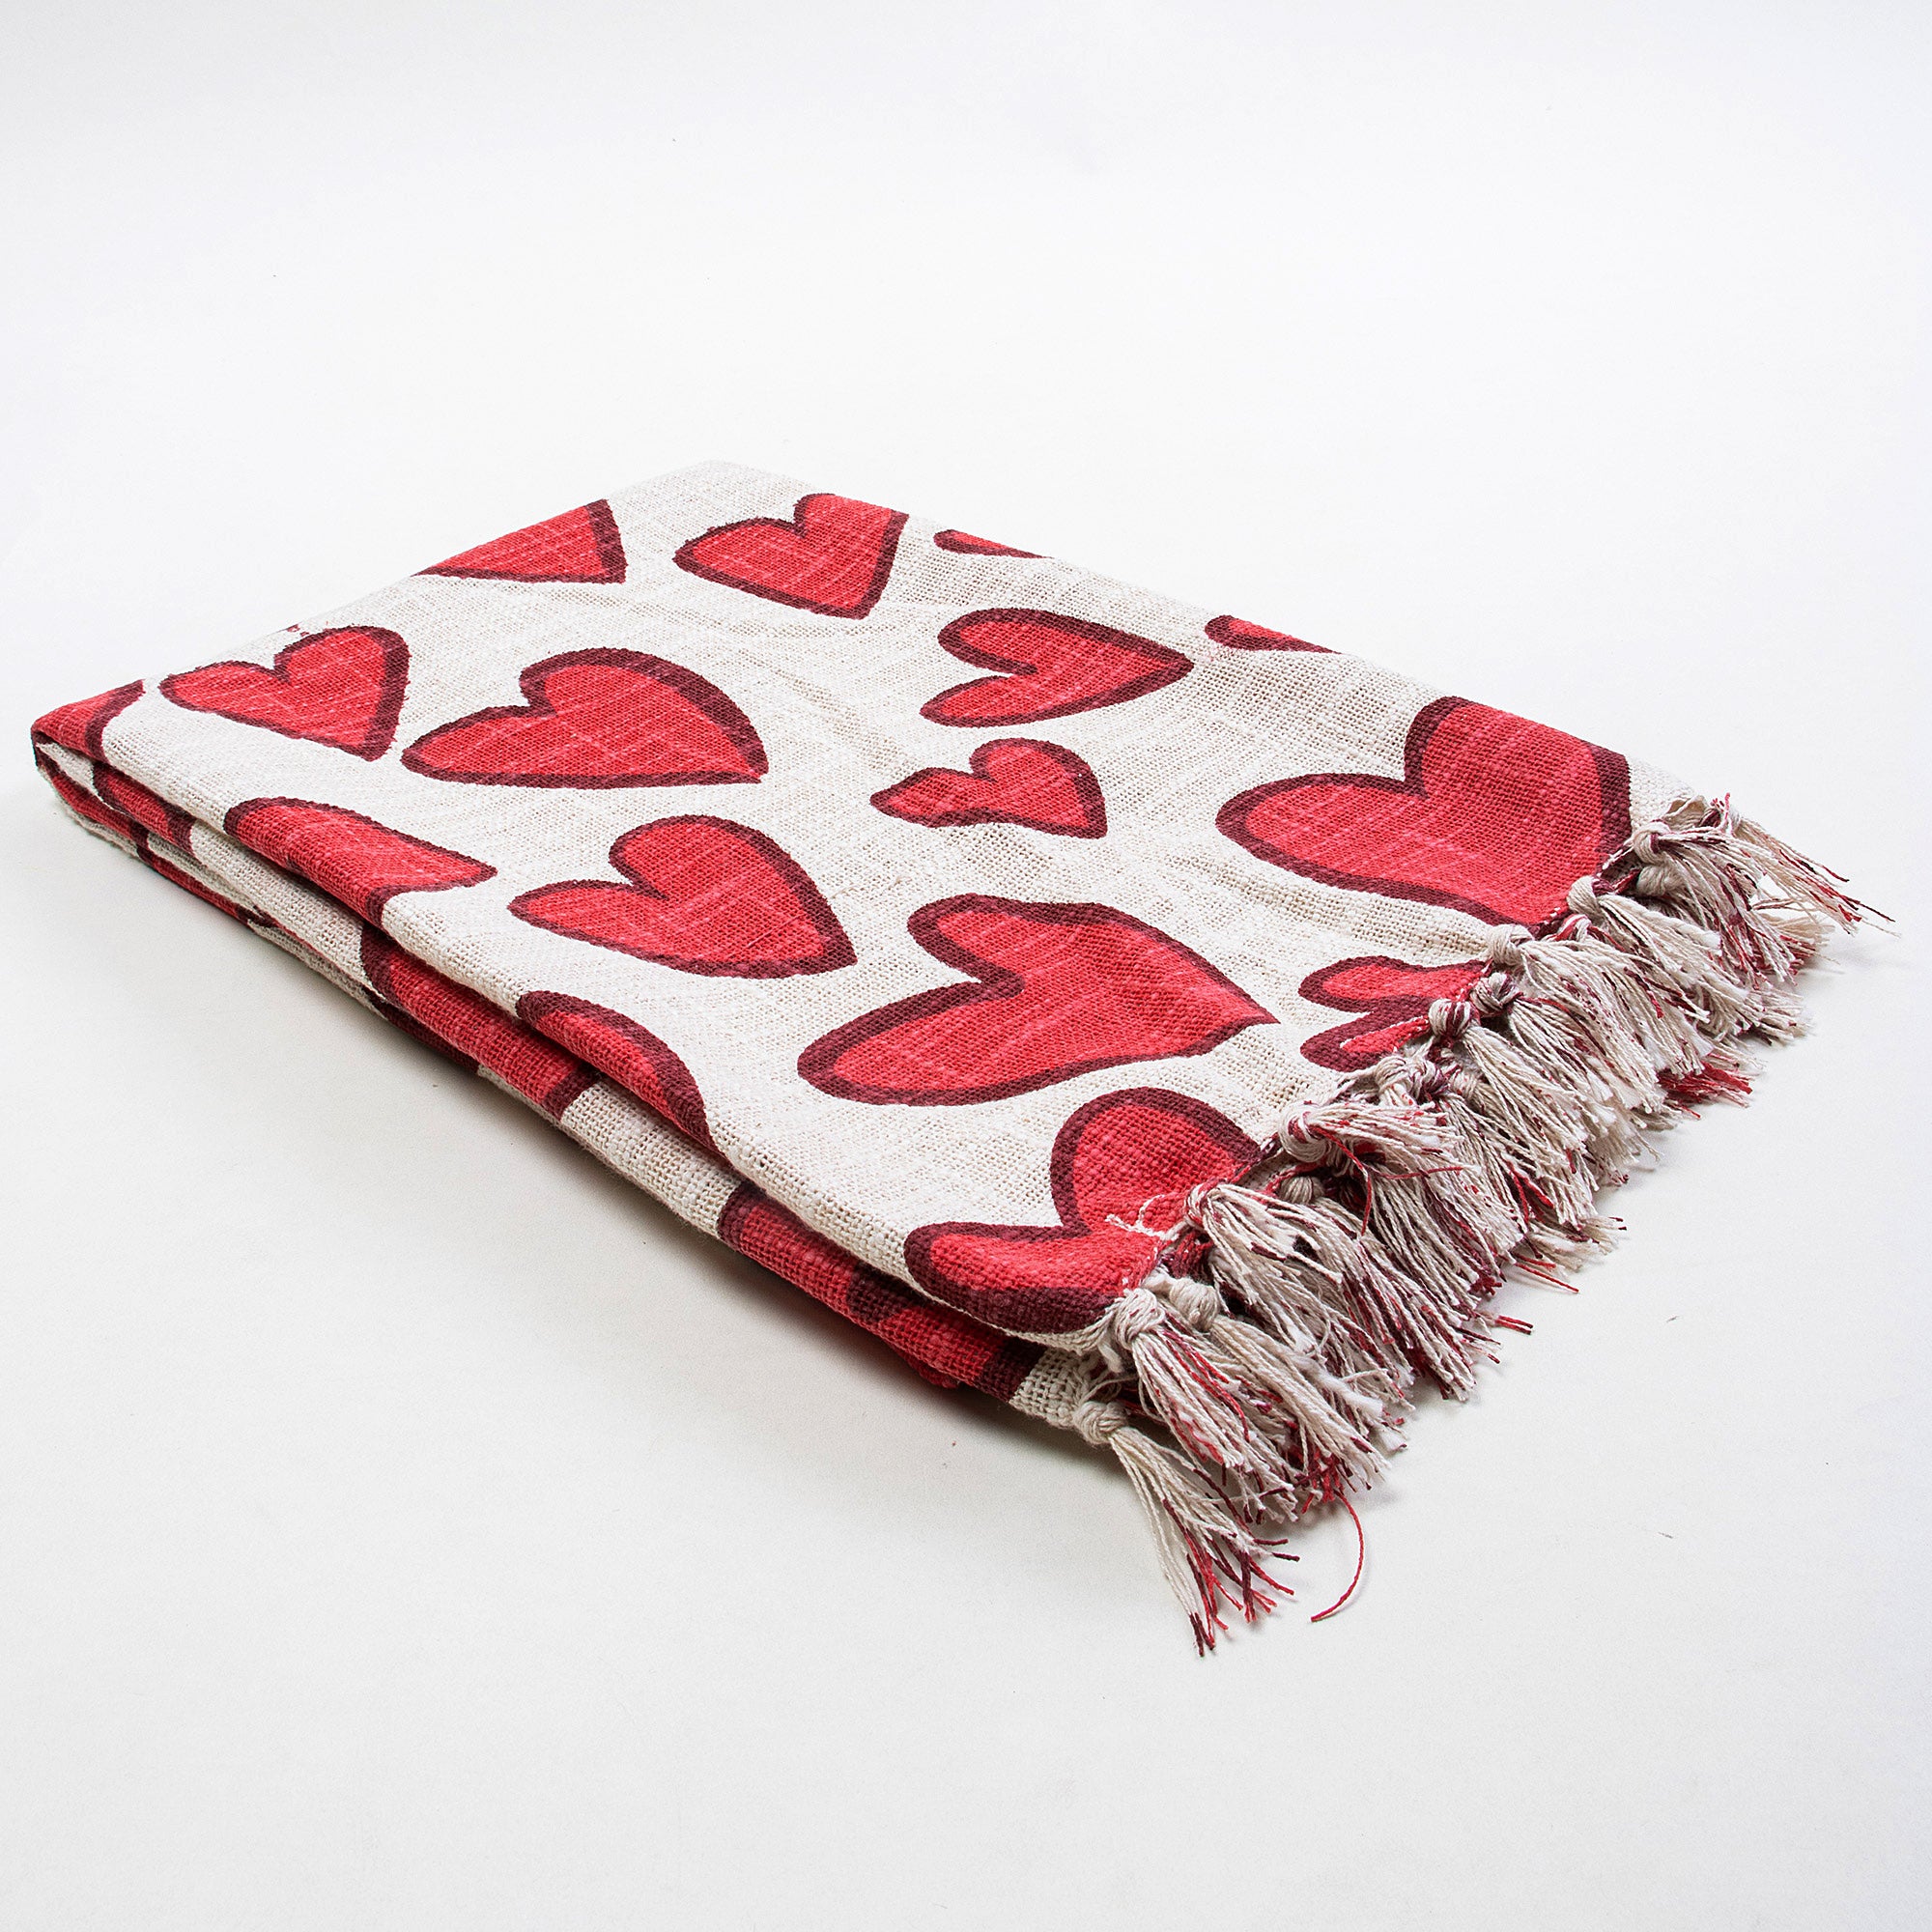 Red Heart Design Soft Cotton Sofa Throw for Home Decor